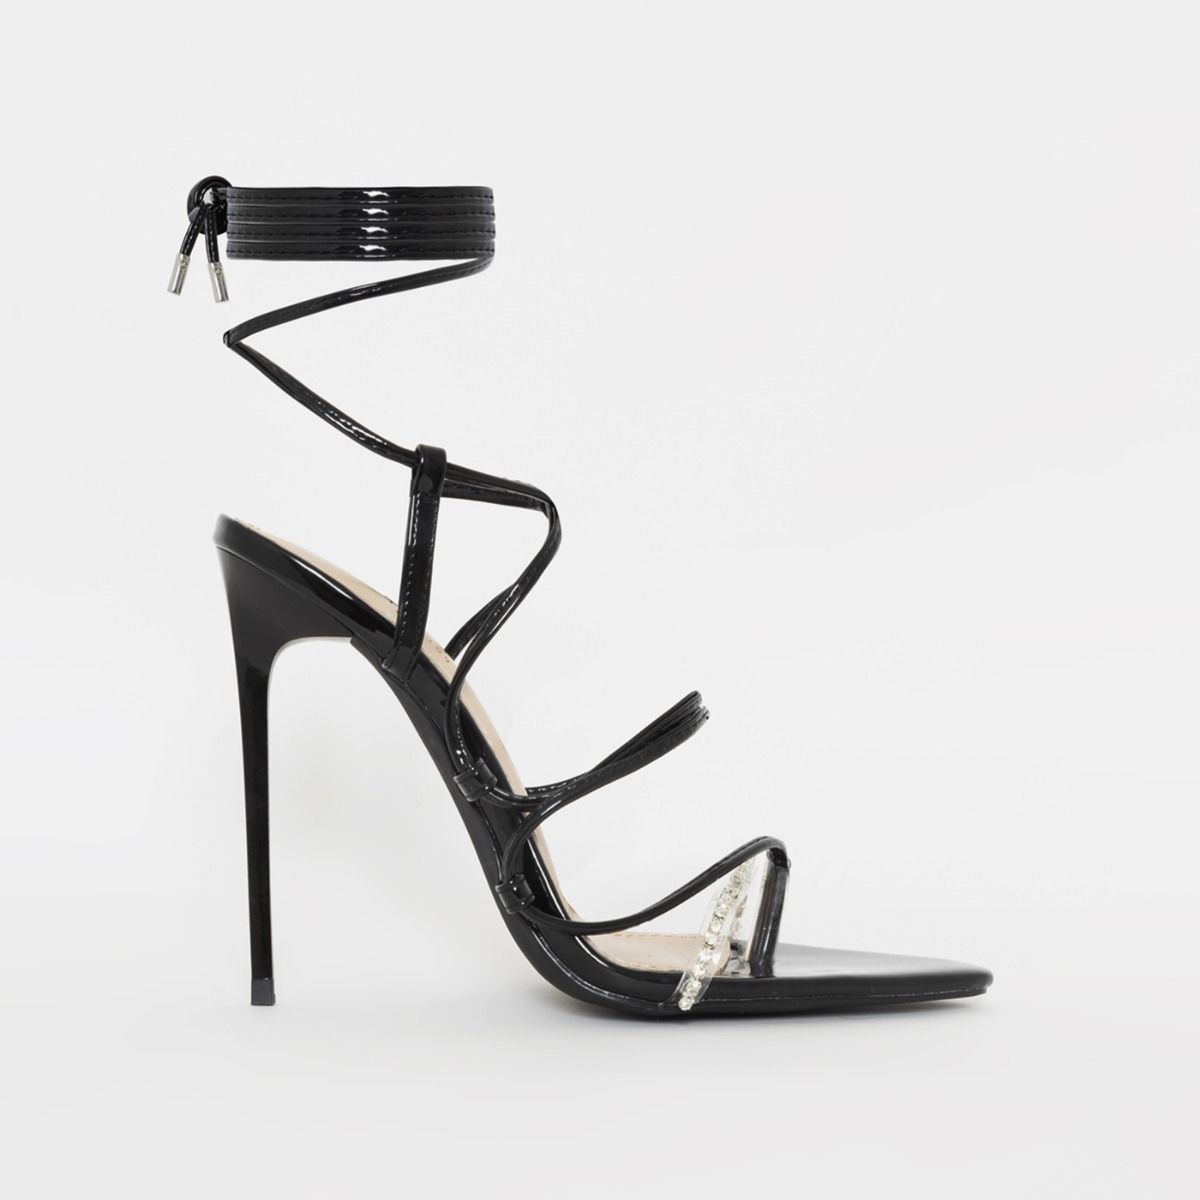 black high stiletto heels